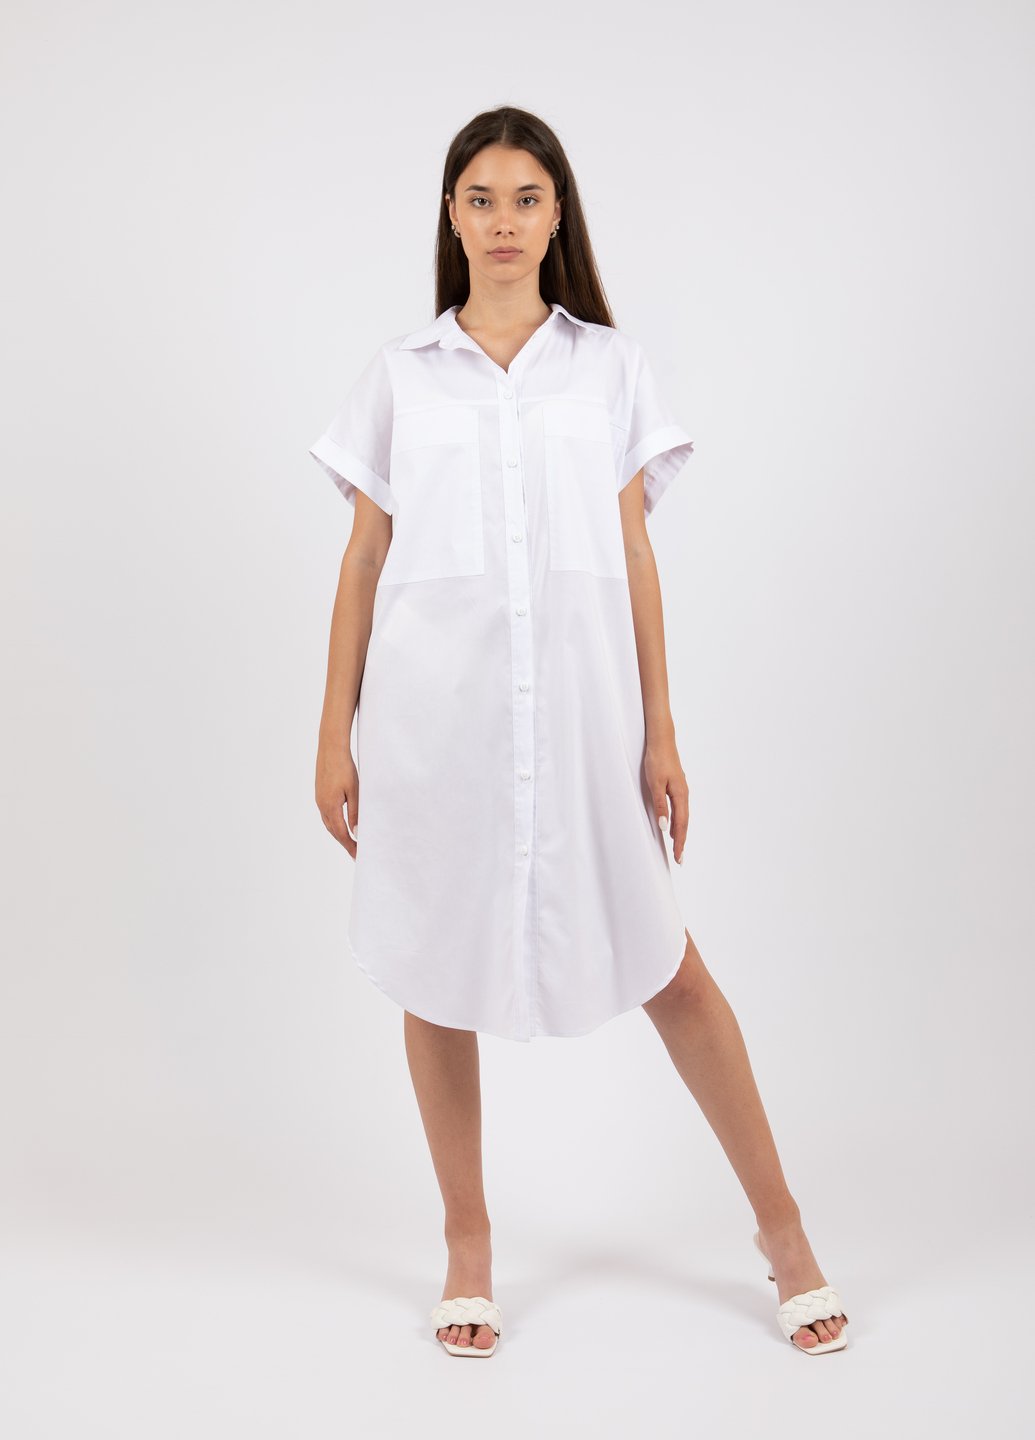 Купить Оверсайз хлопковое платье-рубашка Merlini Руан 700000007 - Белый, 42-44 в интернет-магазине